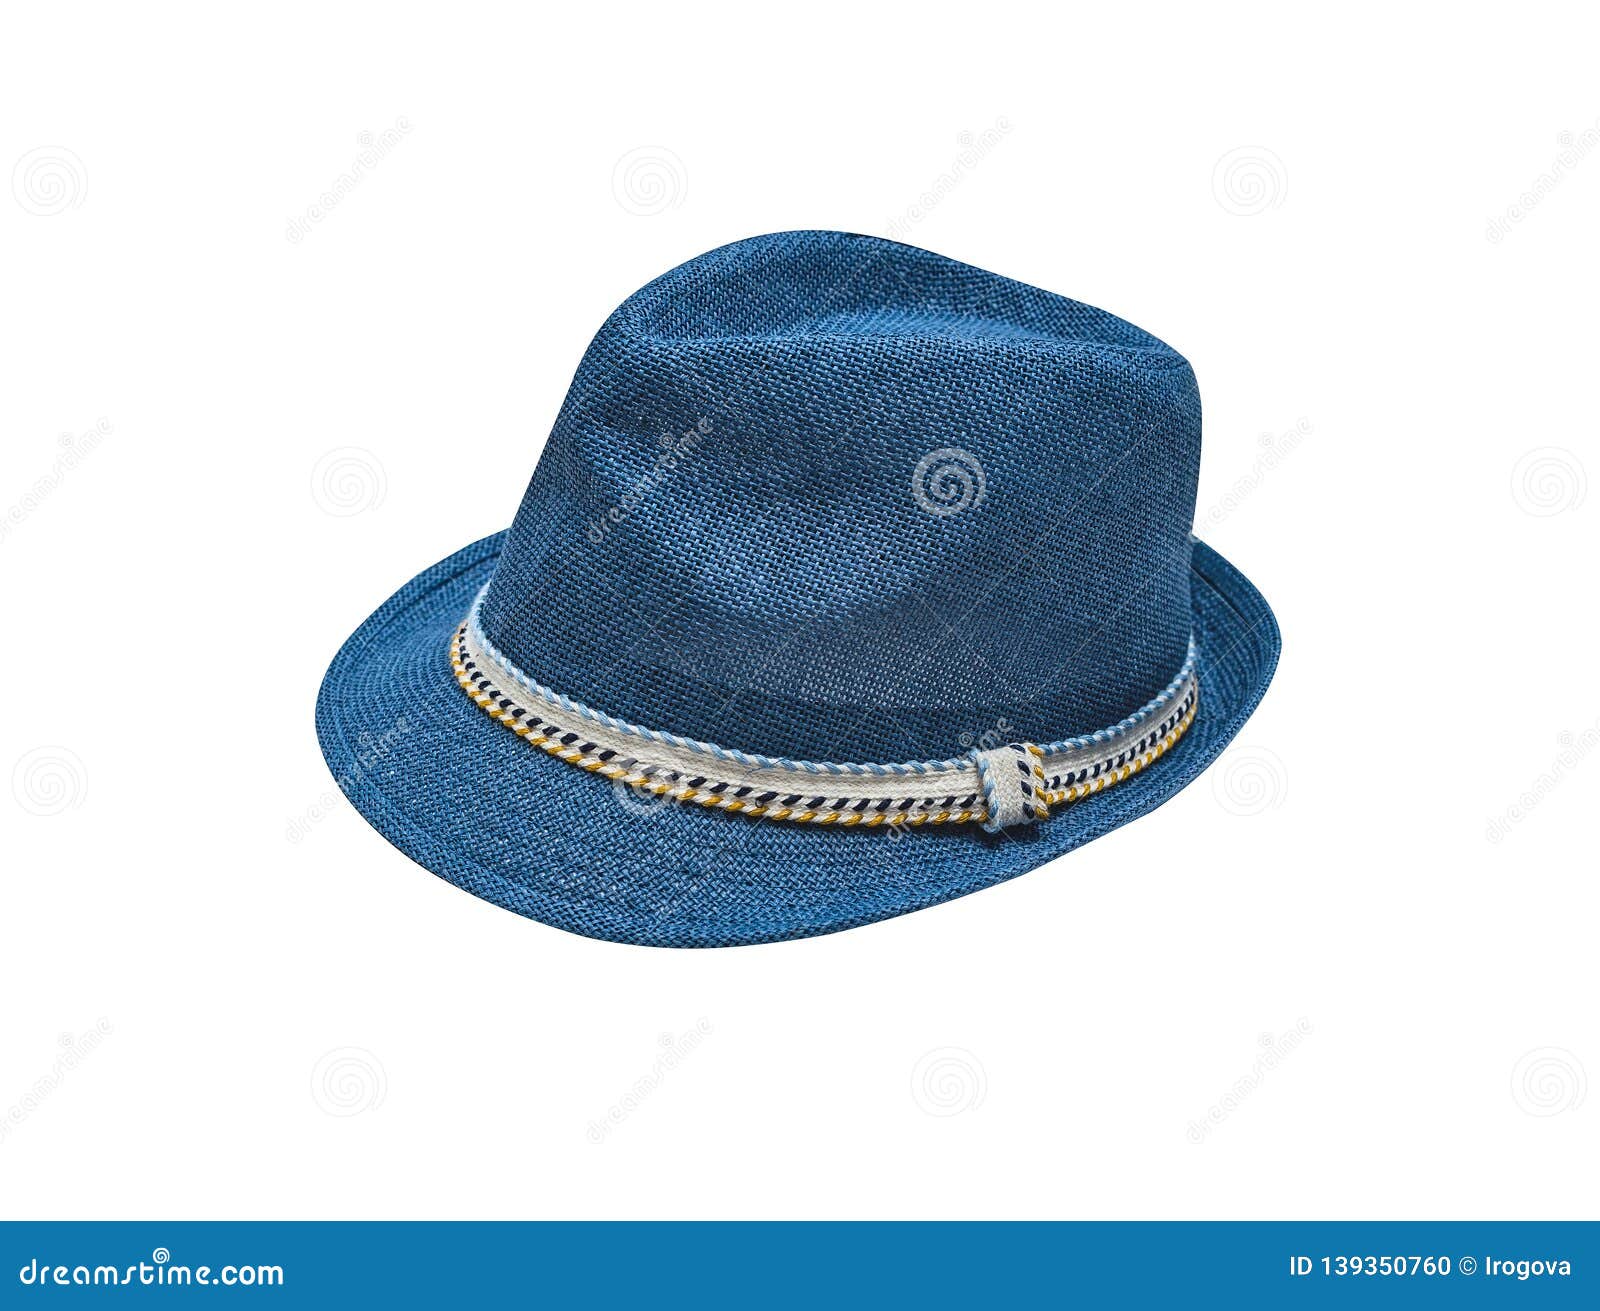 blue vintage straw children hat fasion